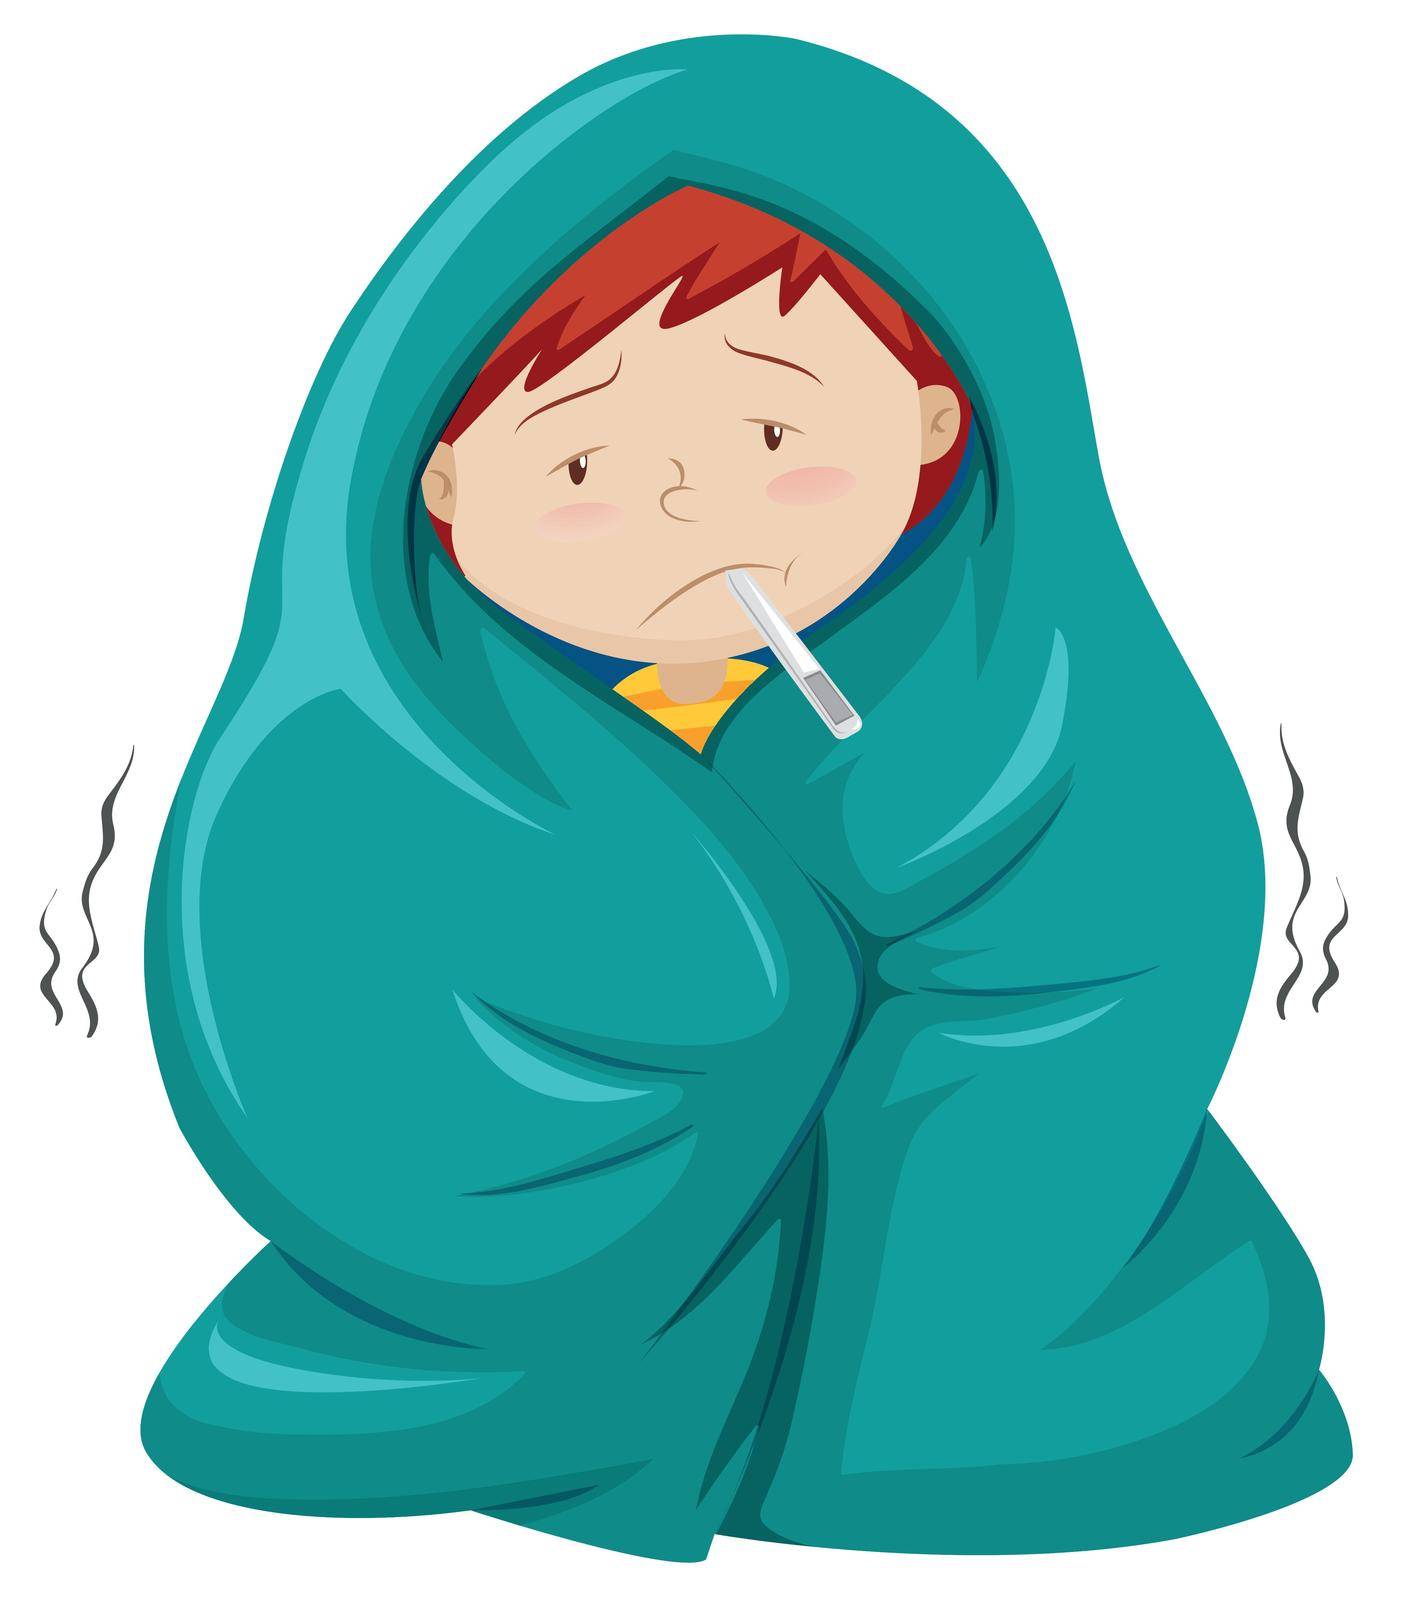 Kid under blanket having fever by iimages